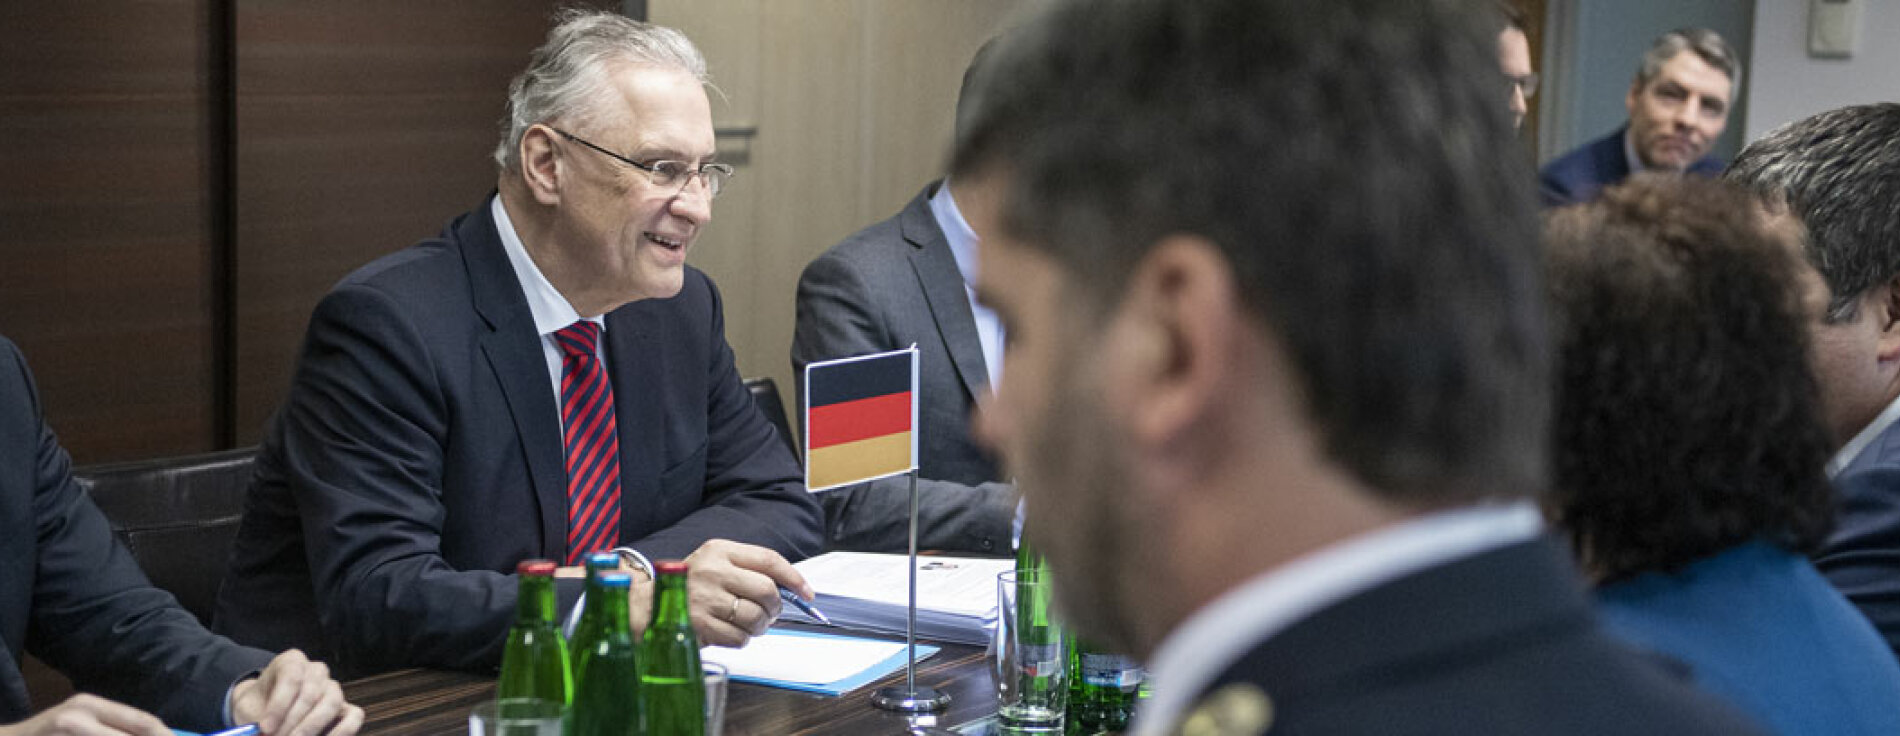 Bayerns Innenminister Joachim Herrmann im Gespräch mit dem tschechischen Innenminister 